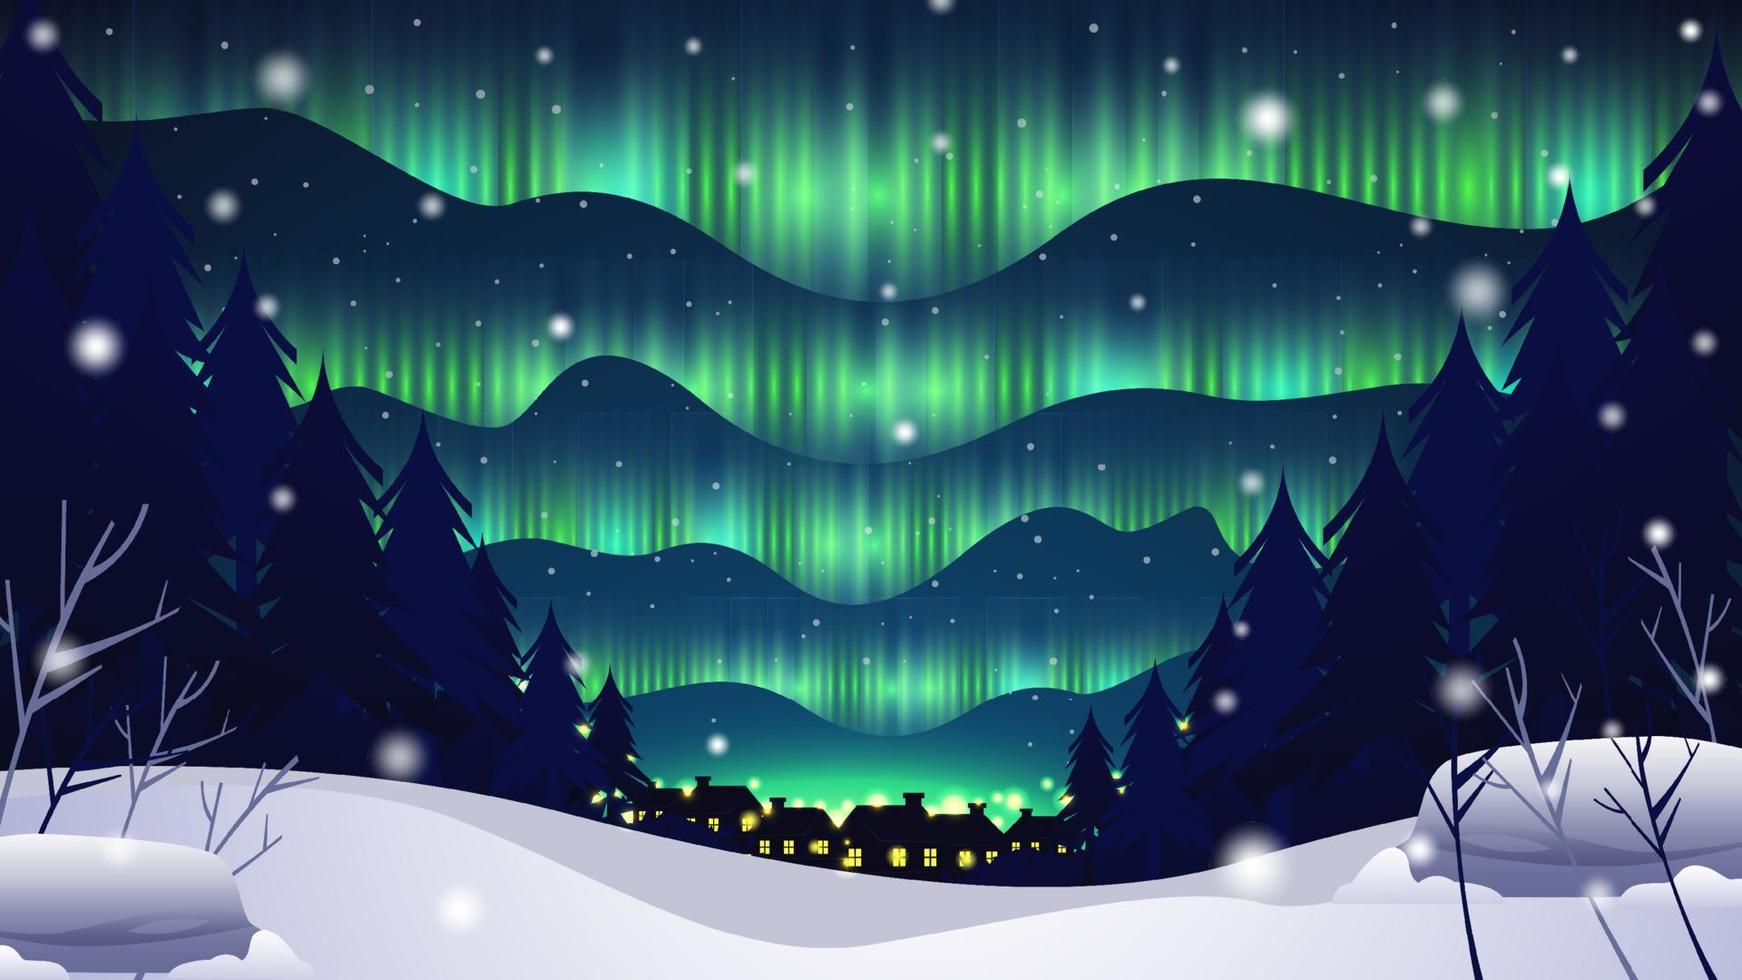 Aurora in winter achtergrond vector